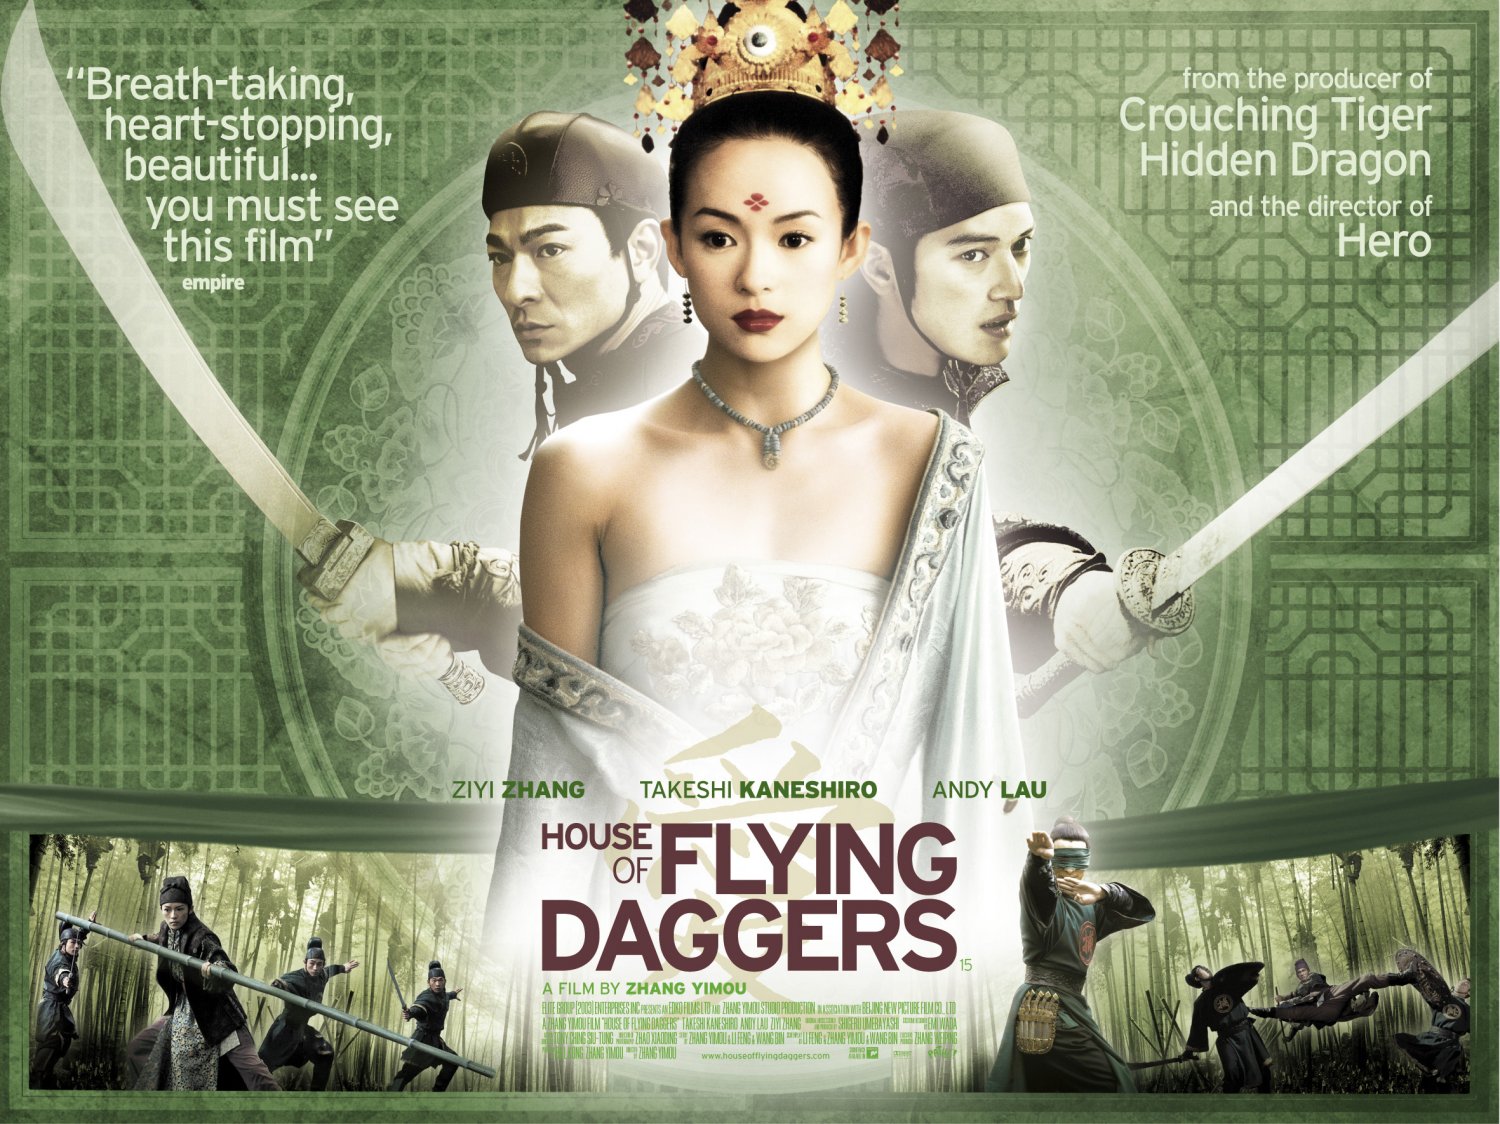 https://filmsisawthisweek.files.wordpress.com/2013/04/house_of_flying_daggers_ver3_xlg.jpg